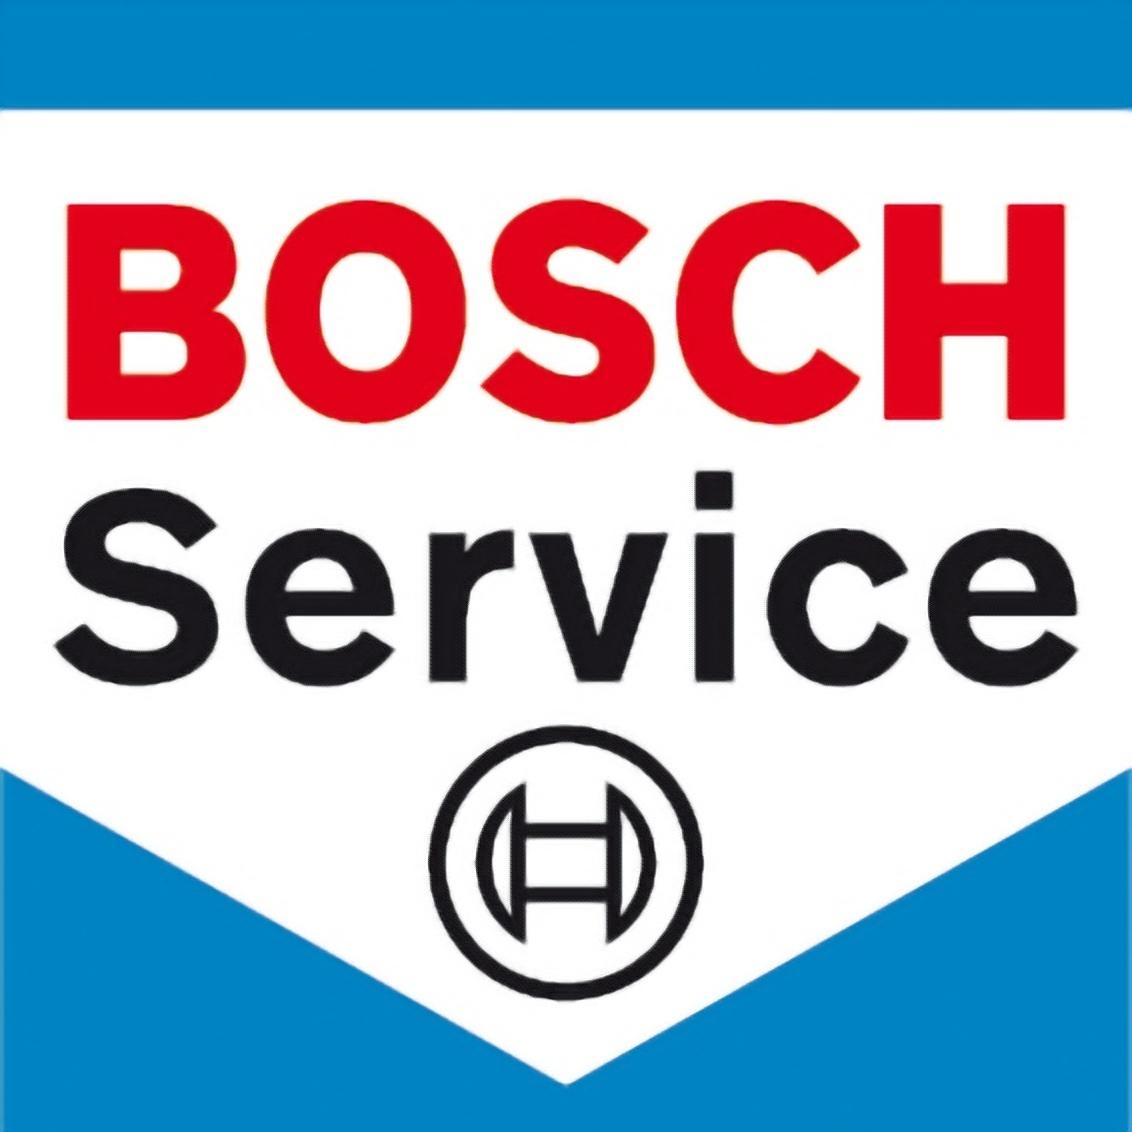 Garage Hago  -  Bosch Car Service La Chartre Sur Le Loir